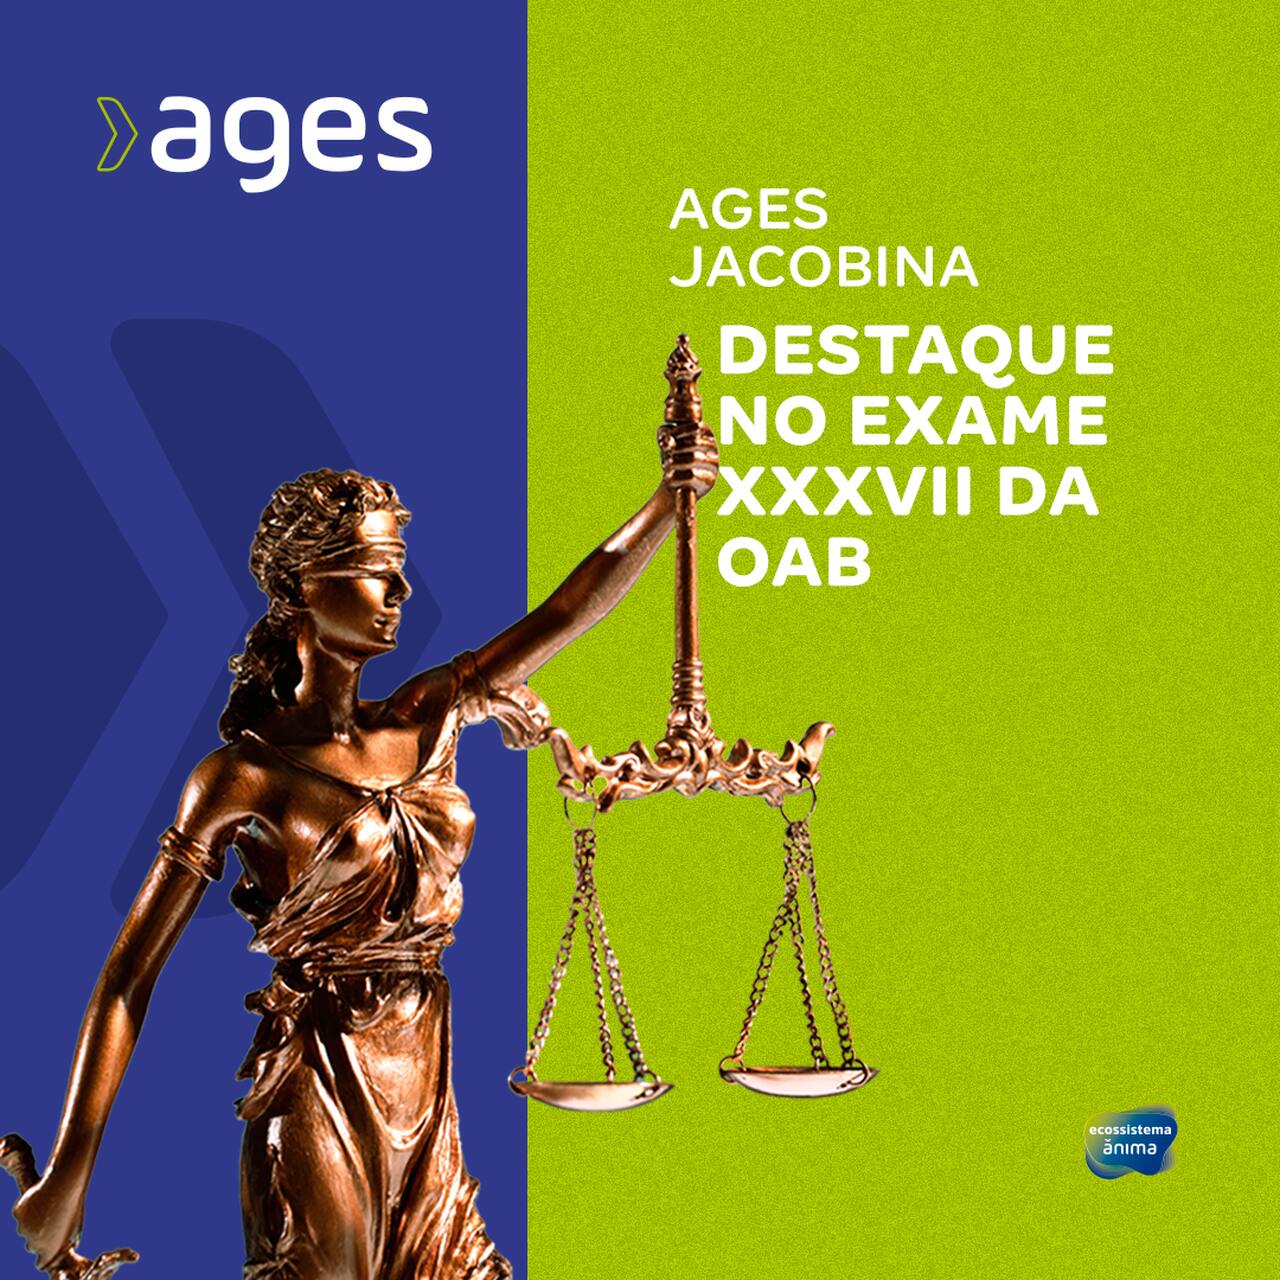 Ages Jacobina é destaque em 37º Exame da OAB